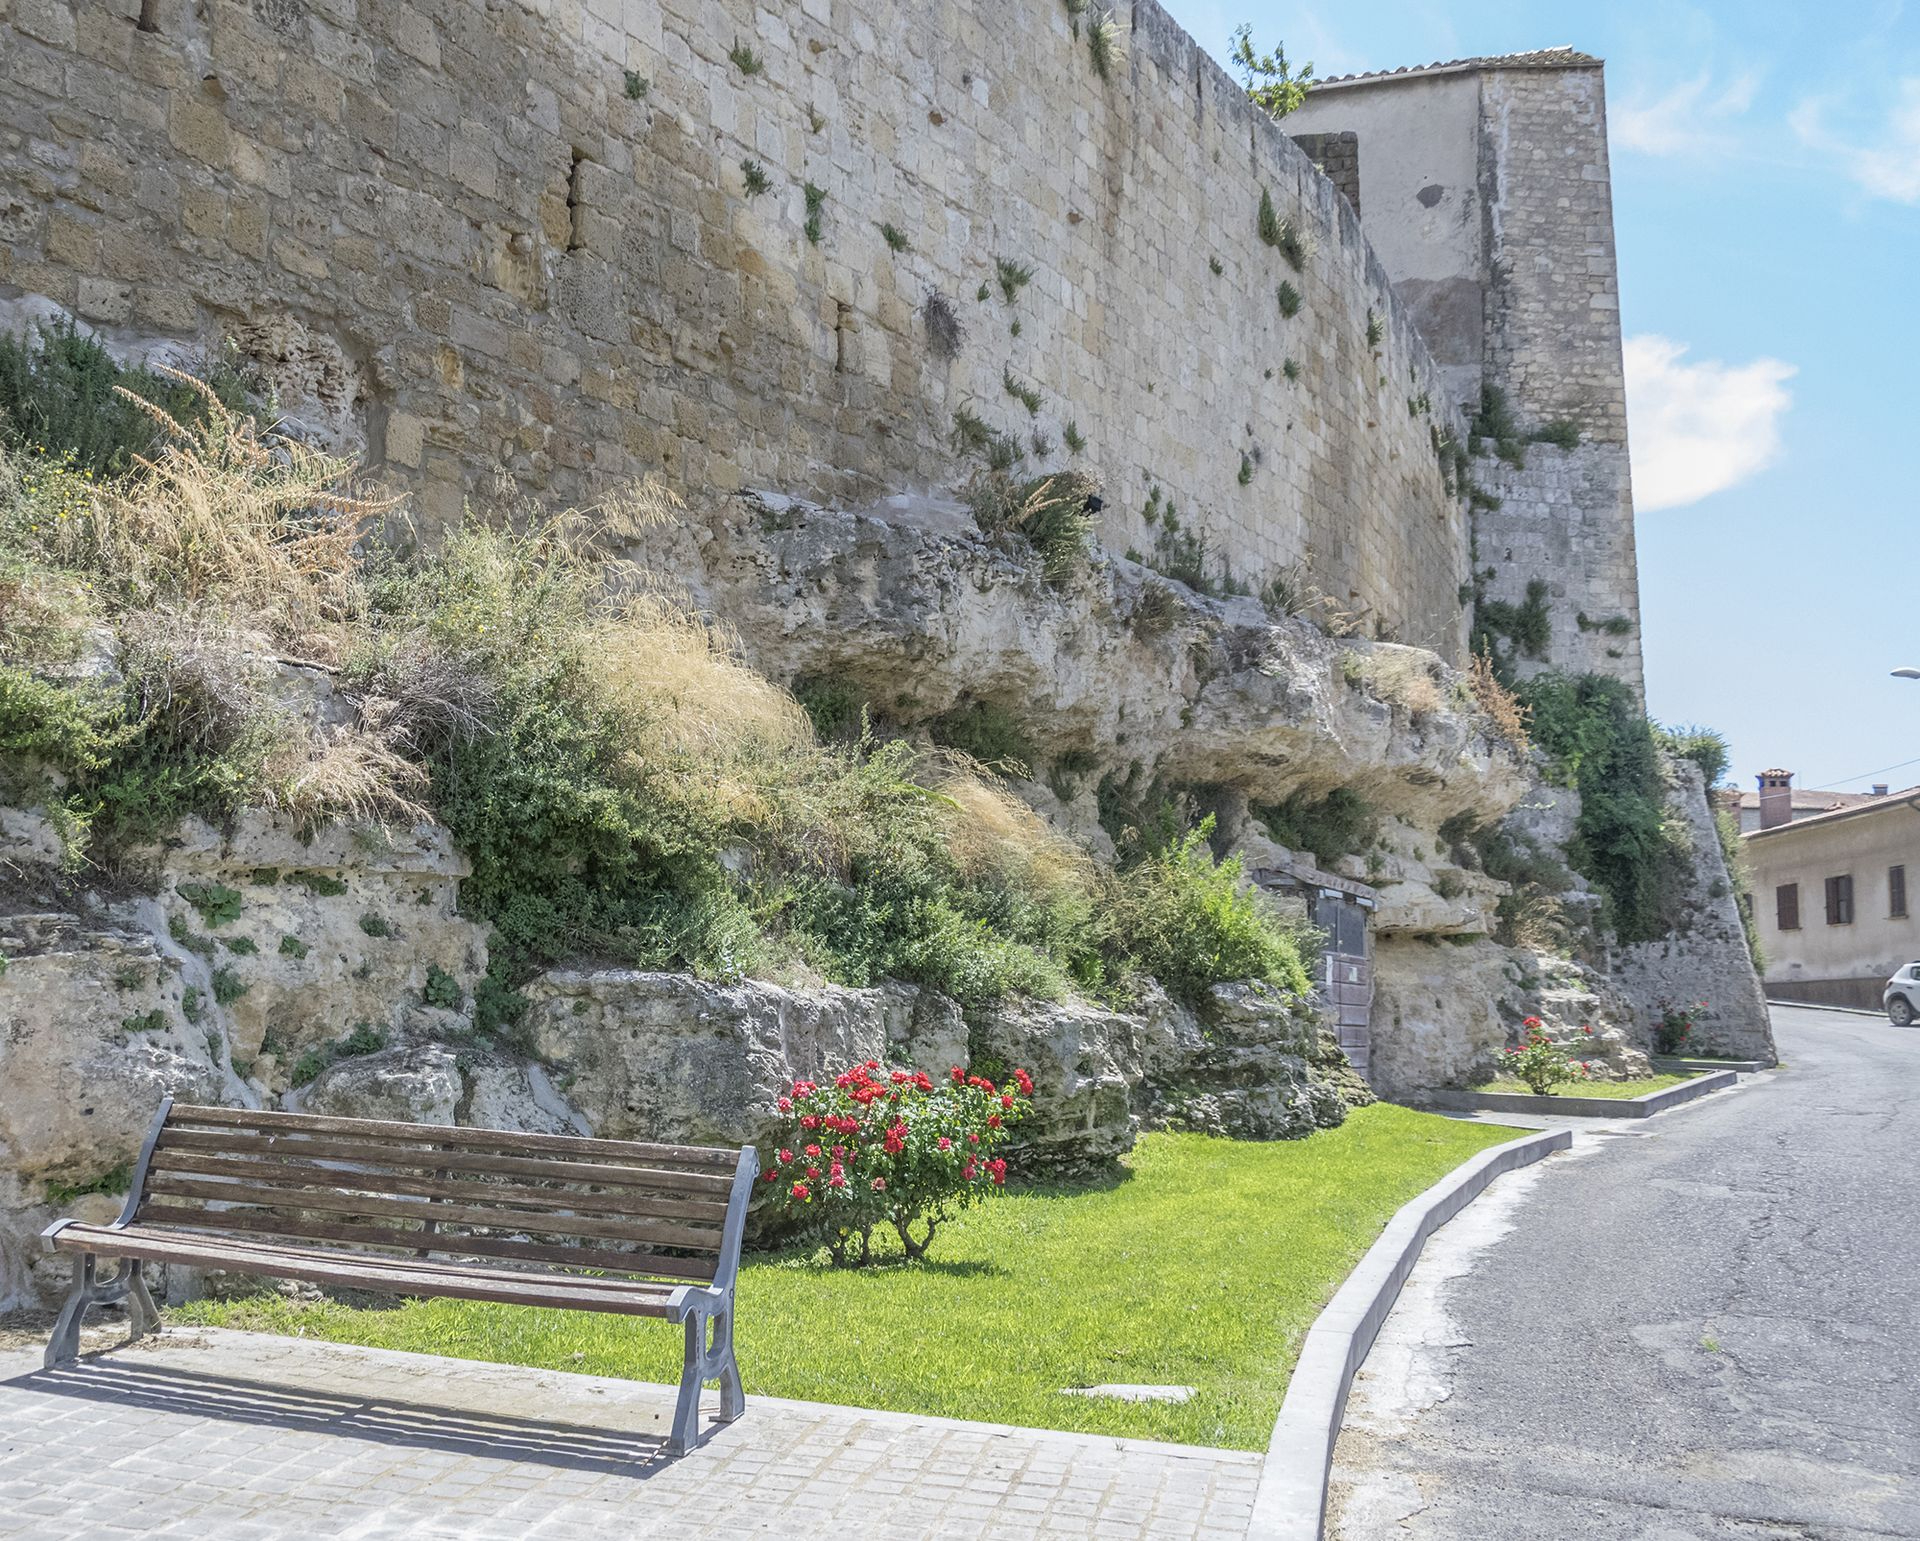 Affioramento di calcareniti plioceniche presso le mura di Tarquinia: si nota come le mura siano letteralmente costruite sopra queste rocce dure e compatte che formano un alto strutturale.